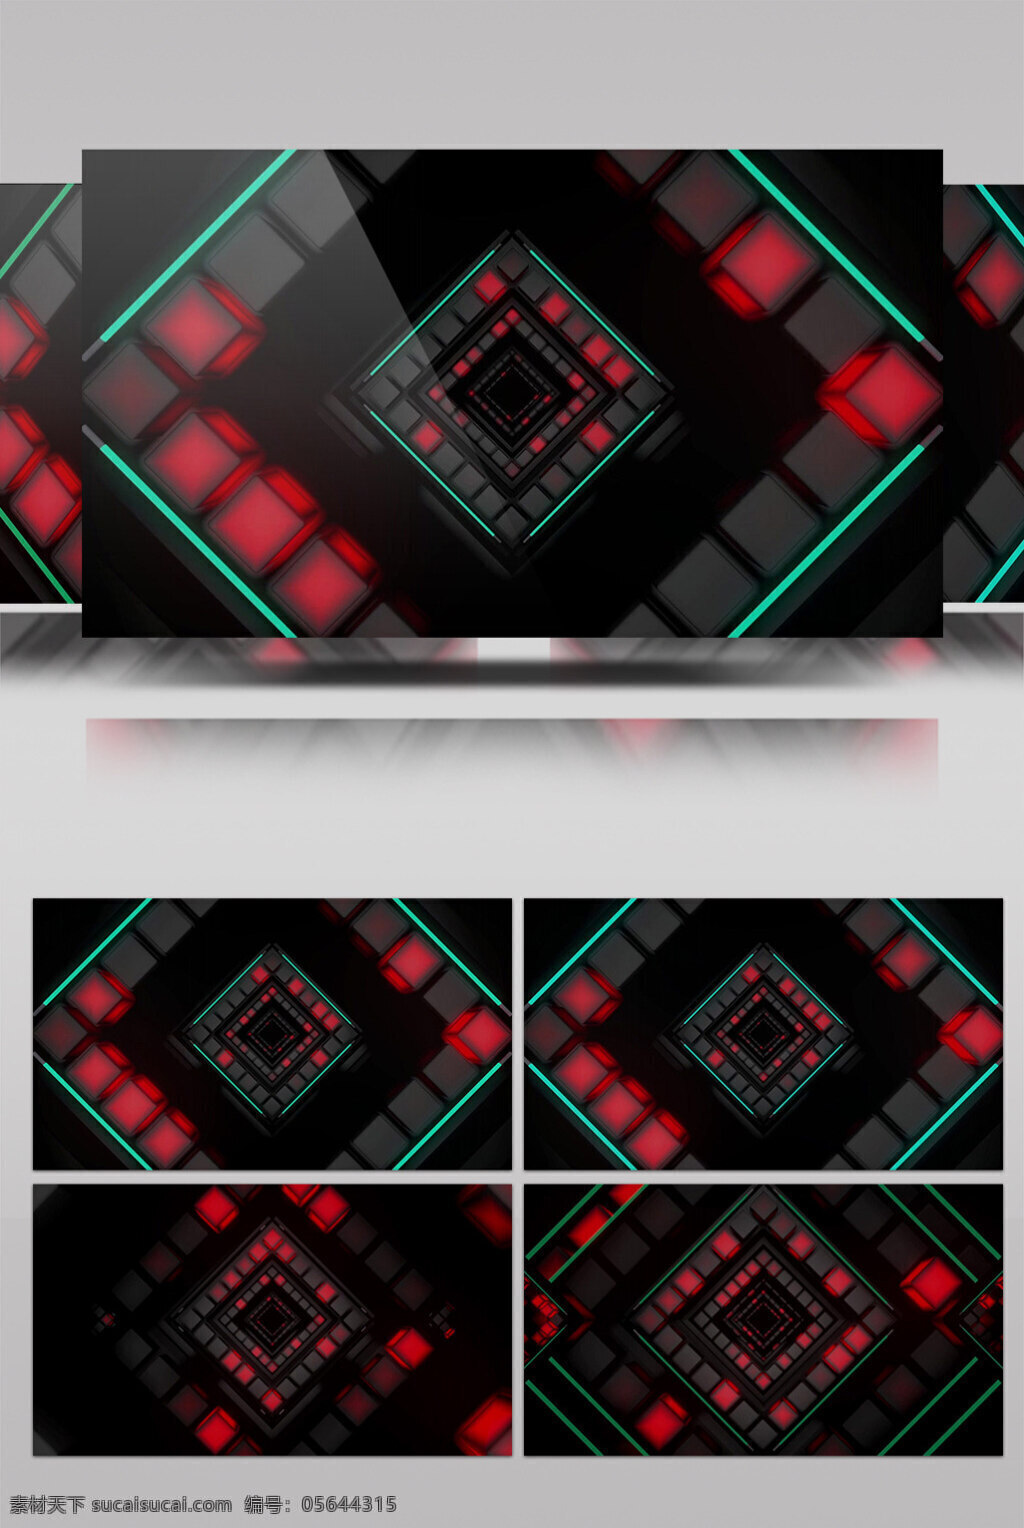 红光 电路板 视频 红光四边形 炫酷光回 三维动态类 几何魔法 空间几何变换 3d视频素材 特效视频素材